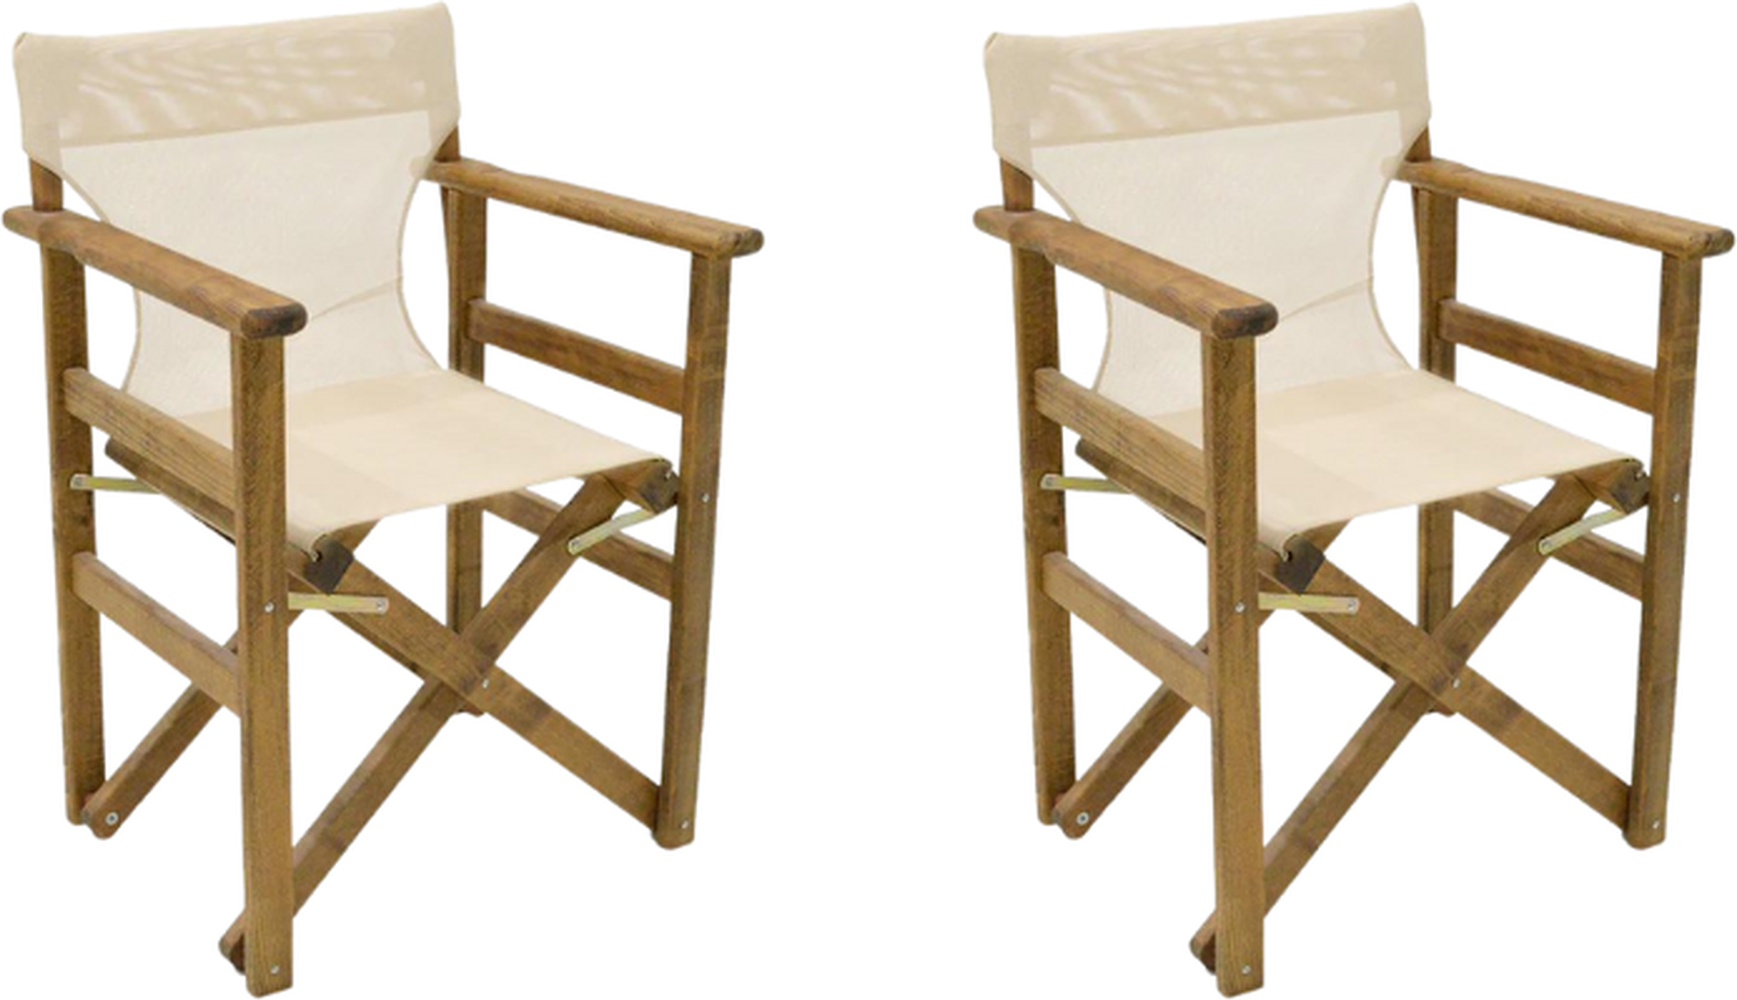 折叠式花园扶手椅空间胡桃木ECRU 61x51x86cm套装2个。